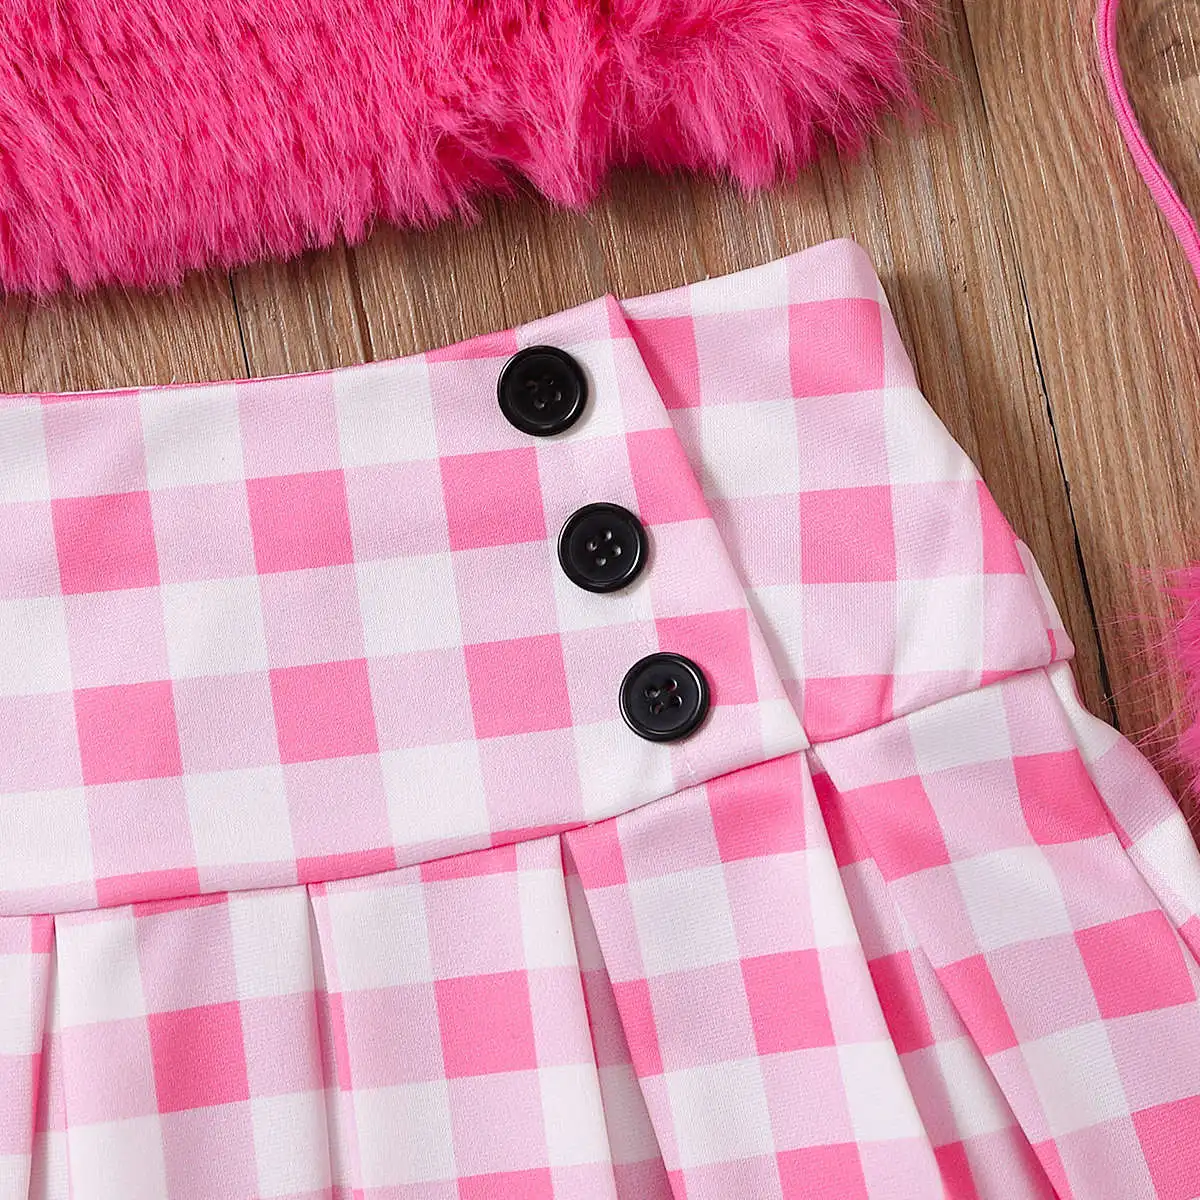 Wholesale children's clothing fashion summer fur suspender vest tops+plaid button skirt+bag 3pcs girl outfits clothes